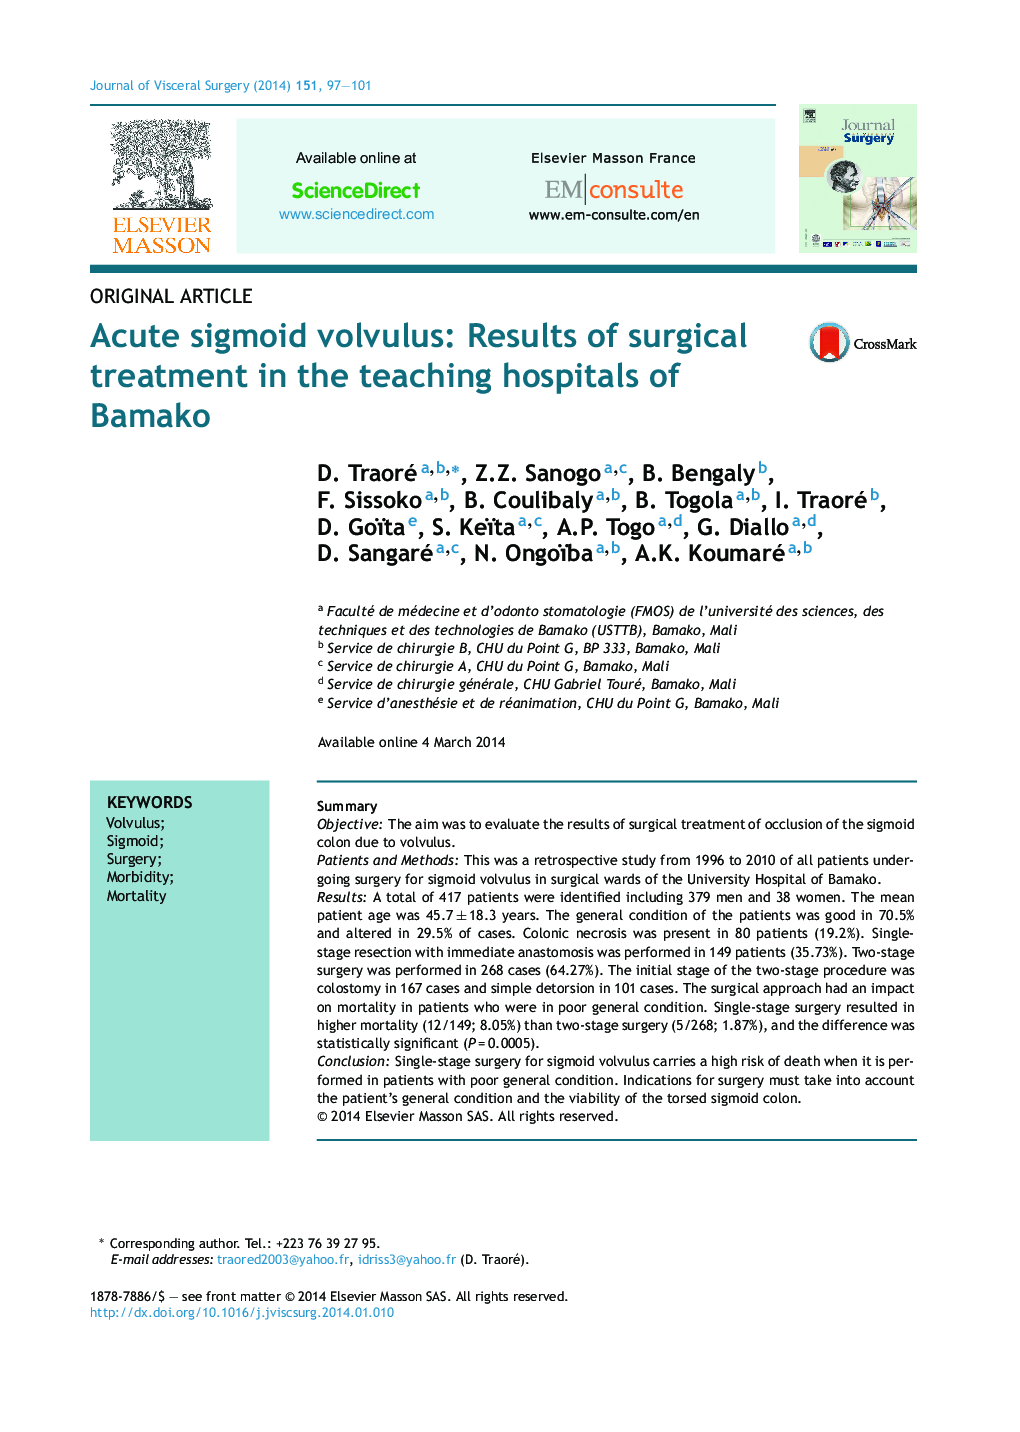 مقاله اصلی ویوولول سیگموئیدوسیت: نتایج درمان جراحی در بیمارستان های آموزشی شهر باماکو 